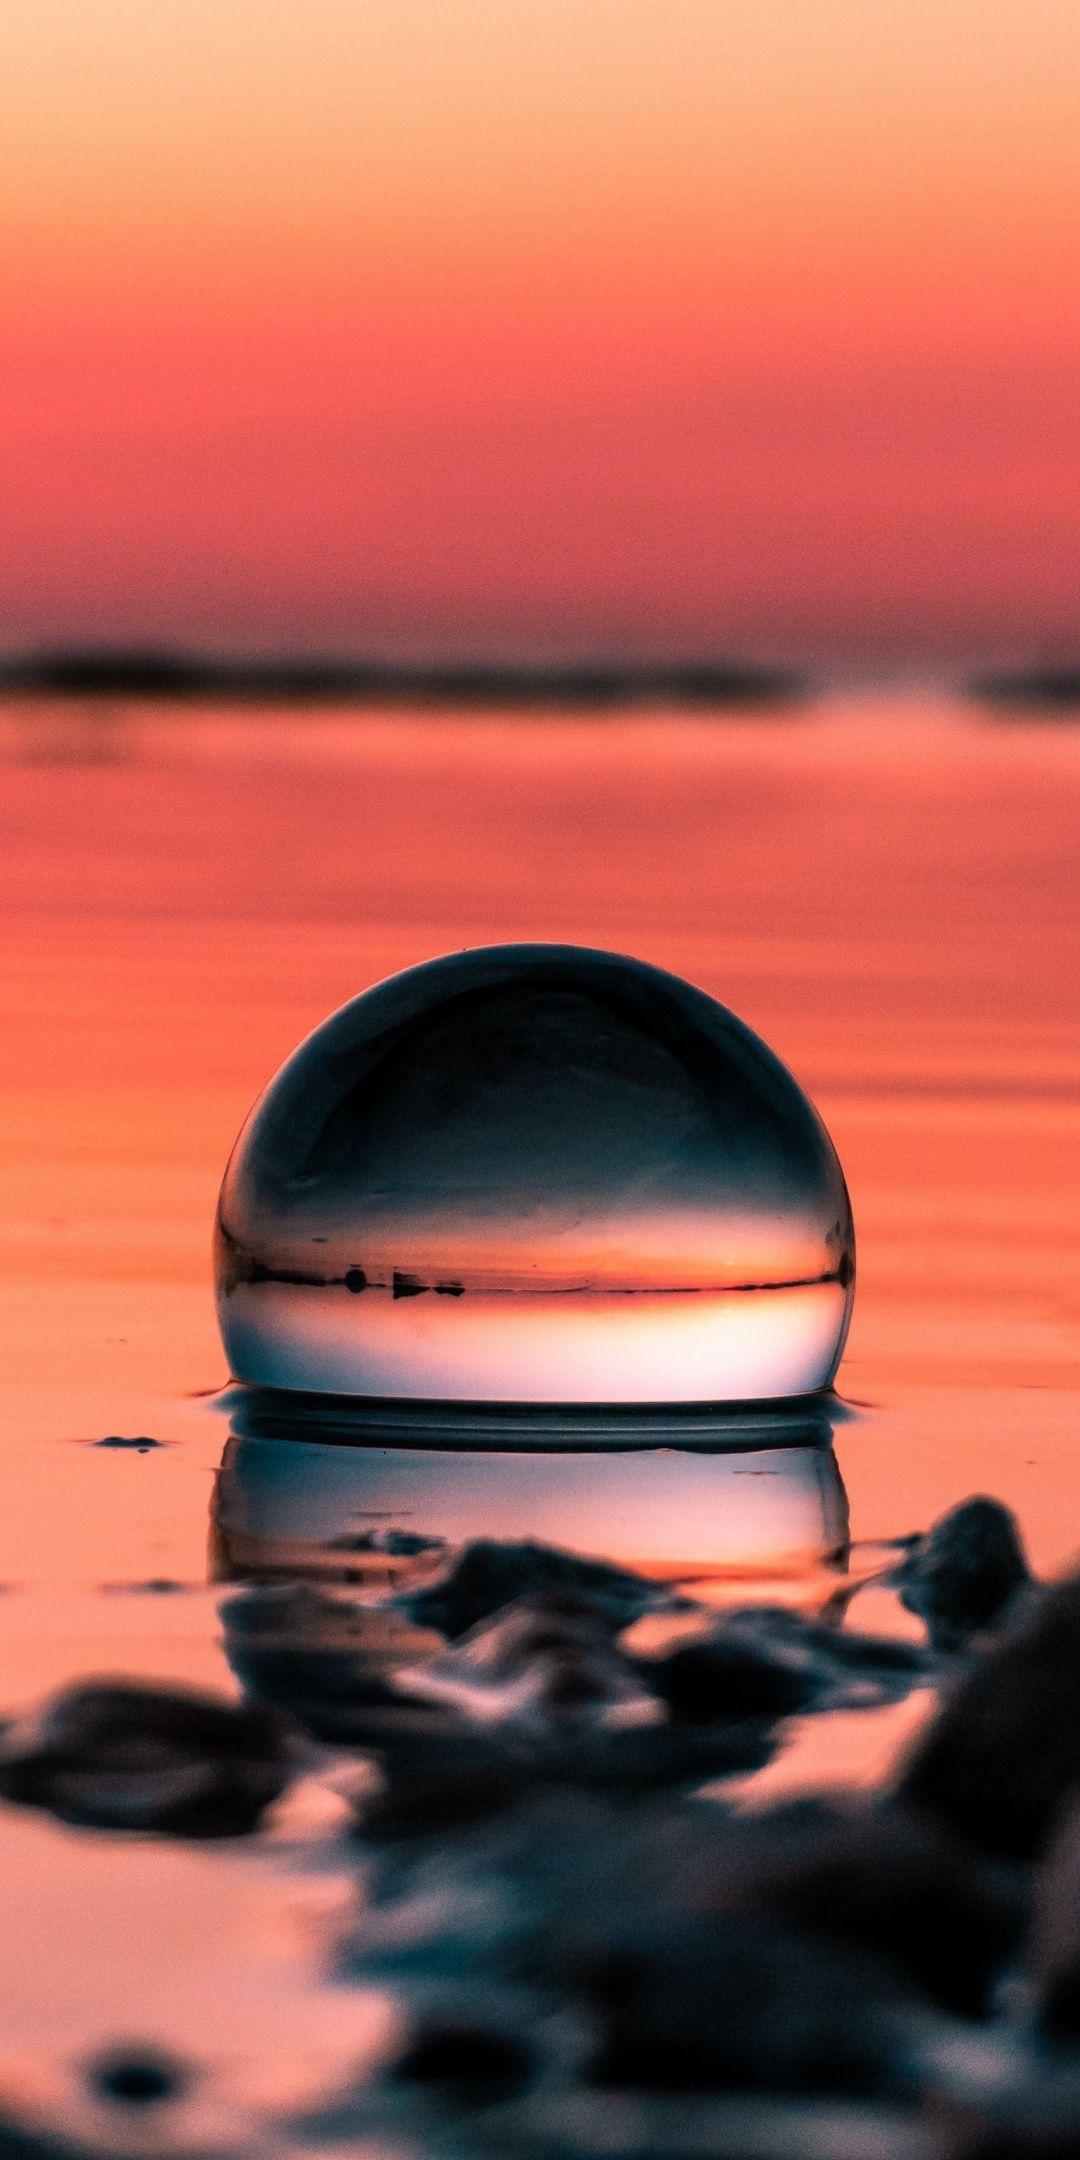 Crystal ball, sunset, reflections Wallpaper. Nature, Natural